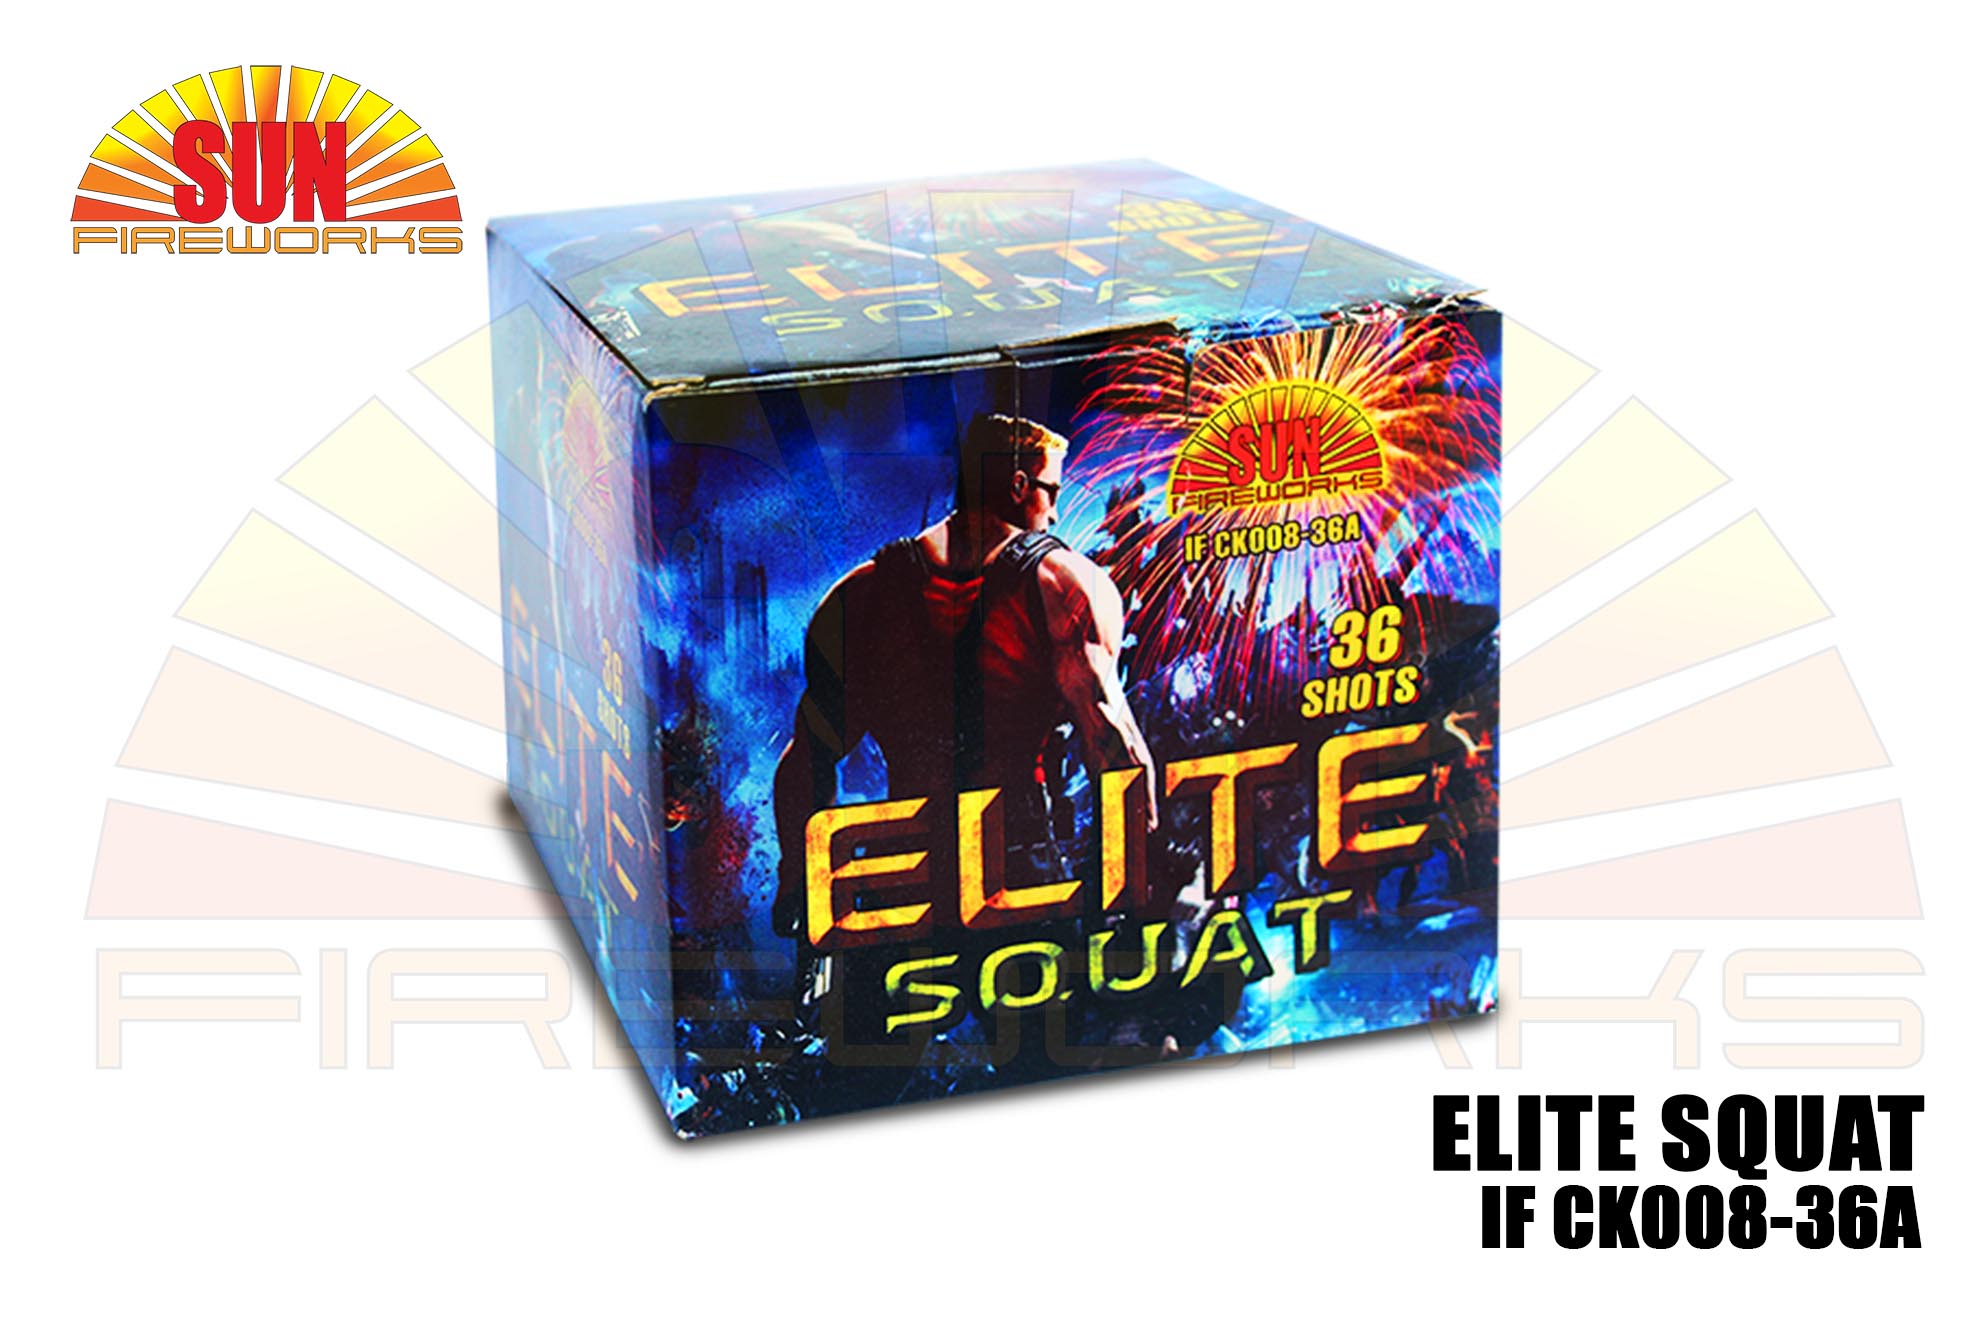 elite squat IF CK008-36A